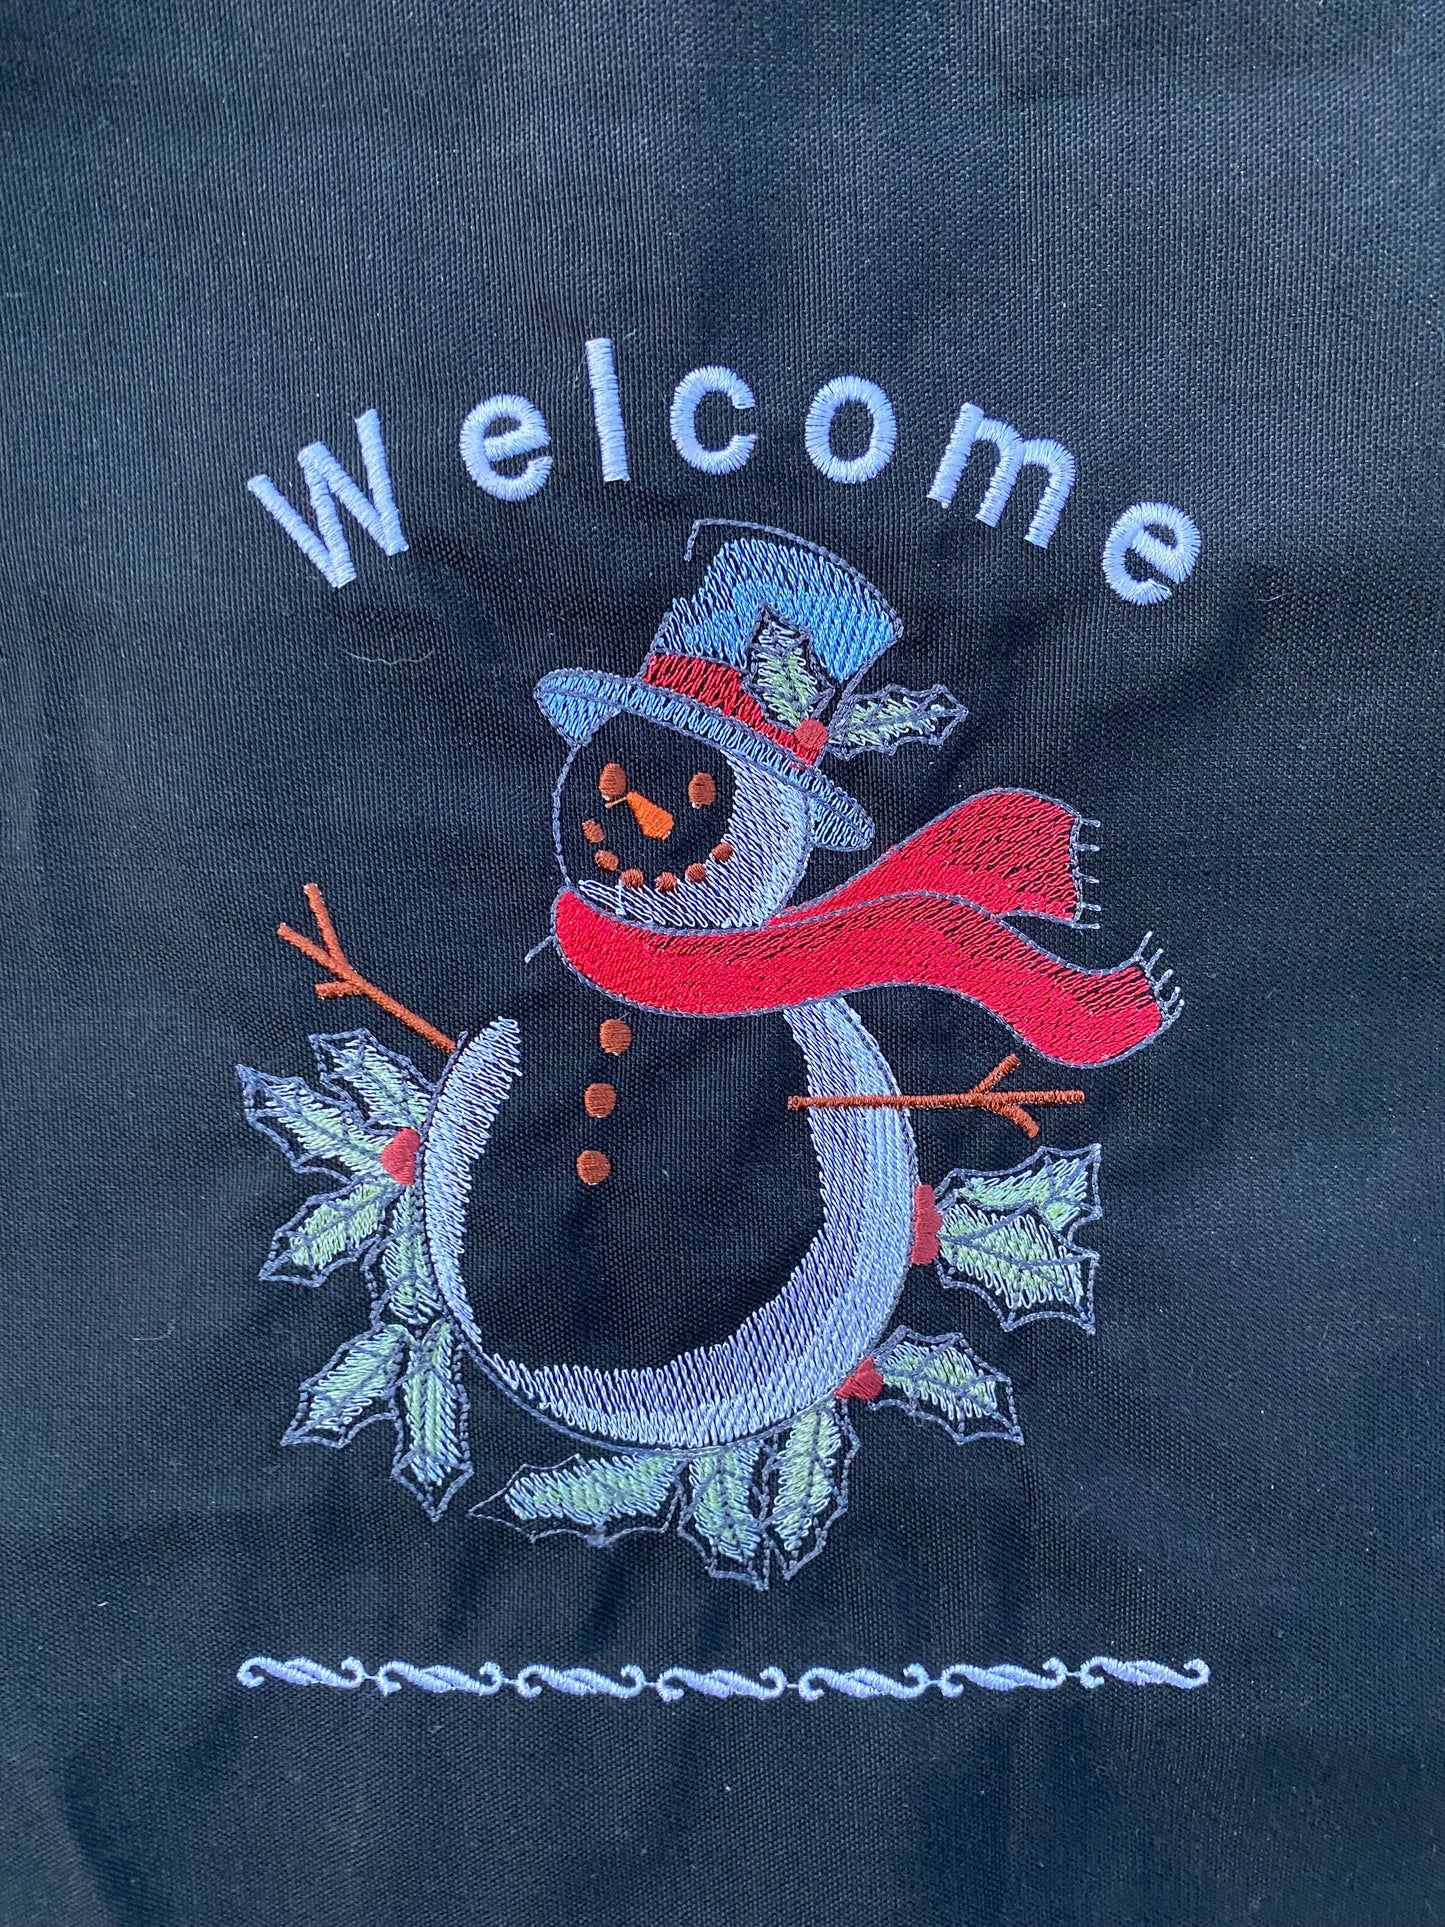 Garden Flag - Snowman Welcome